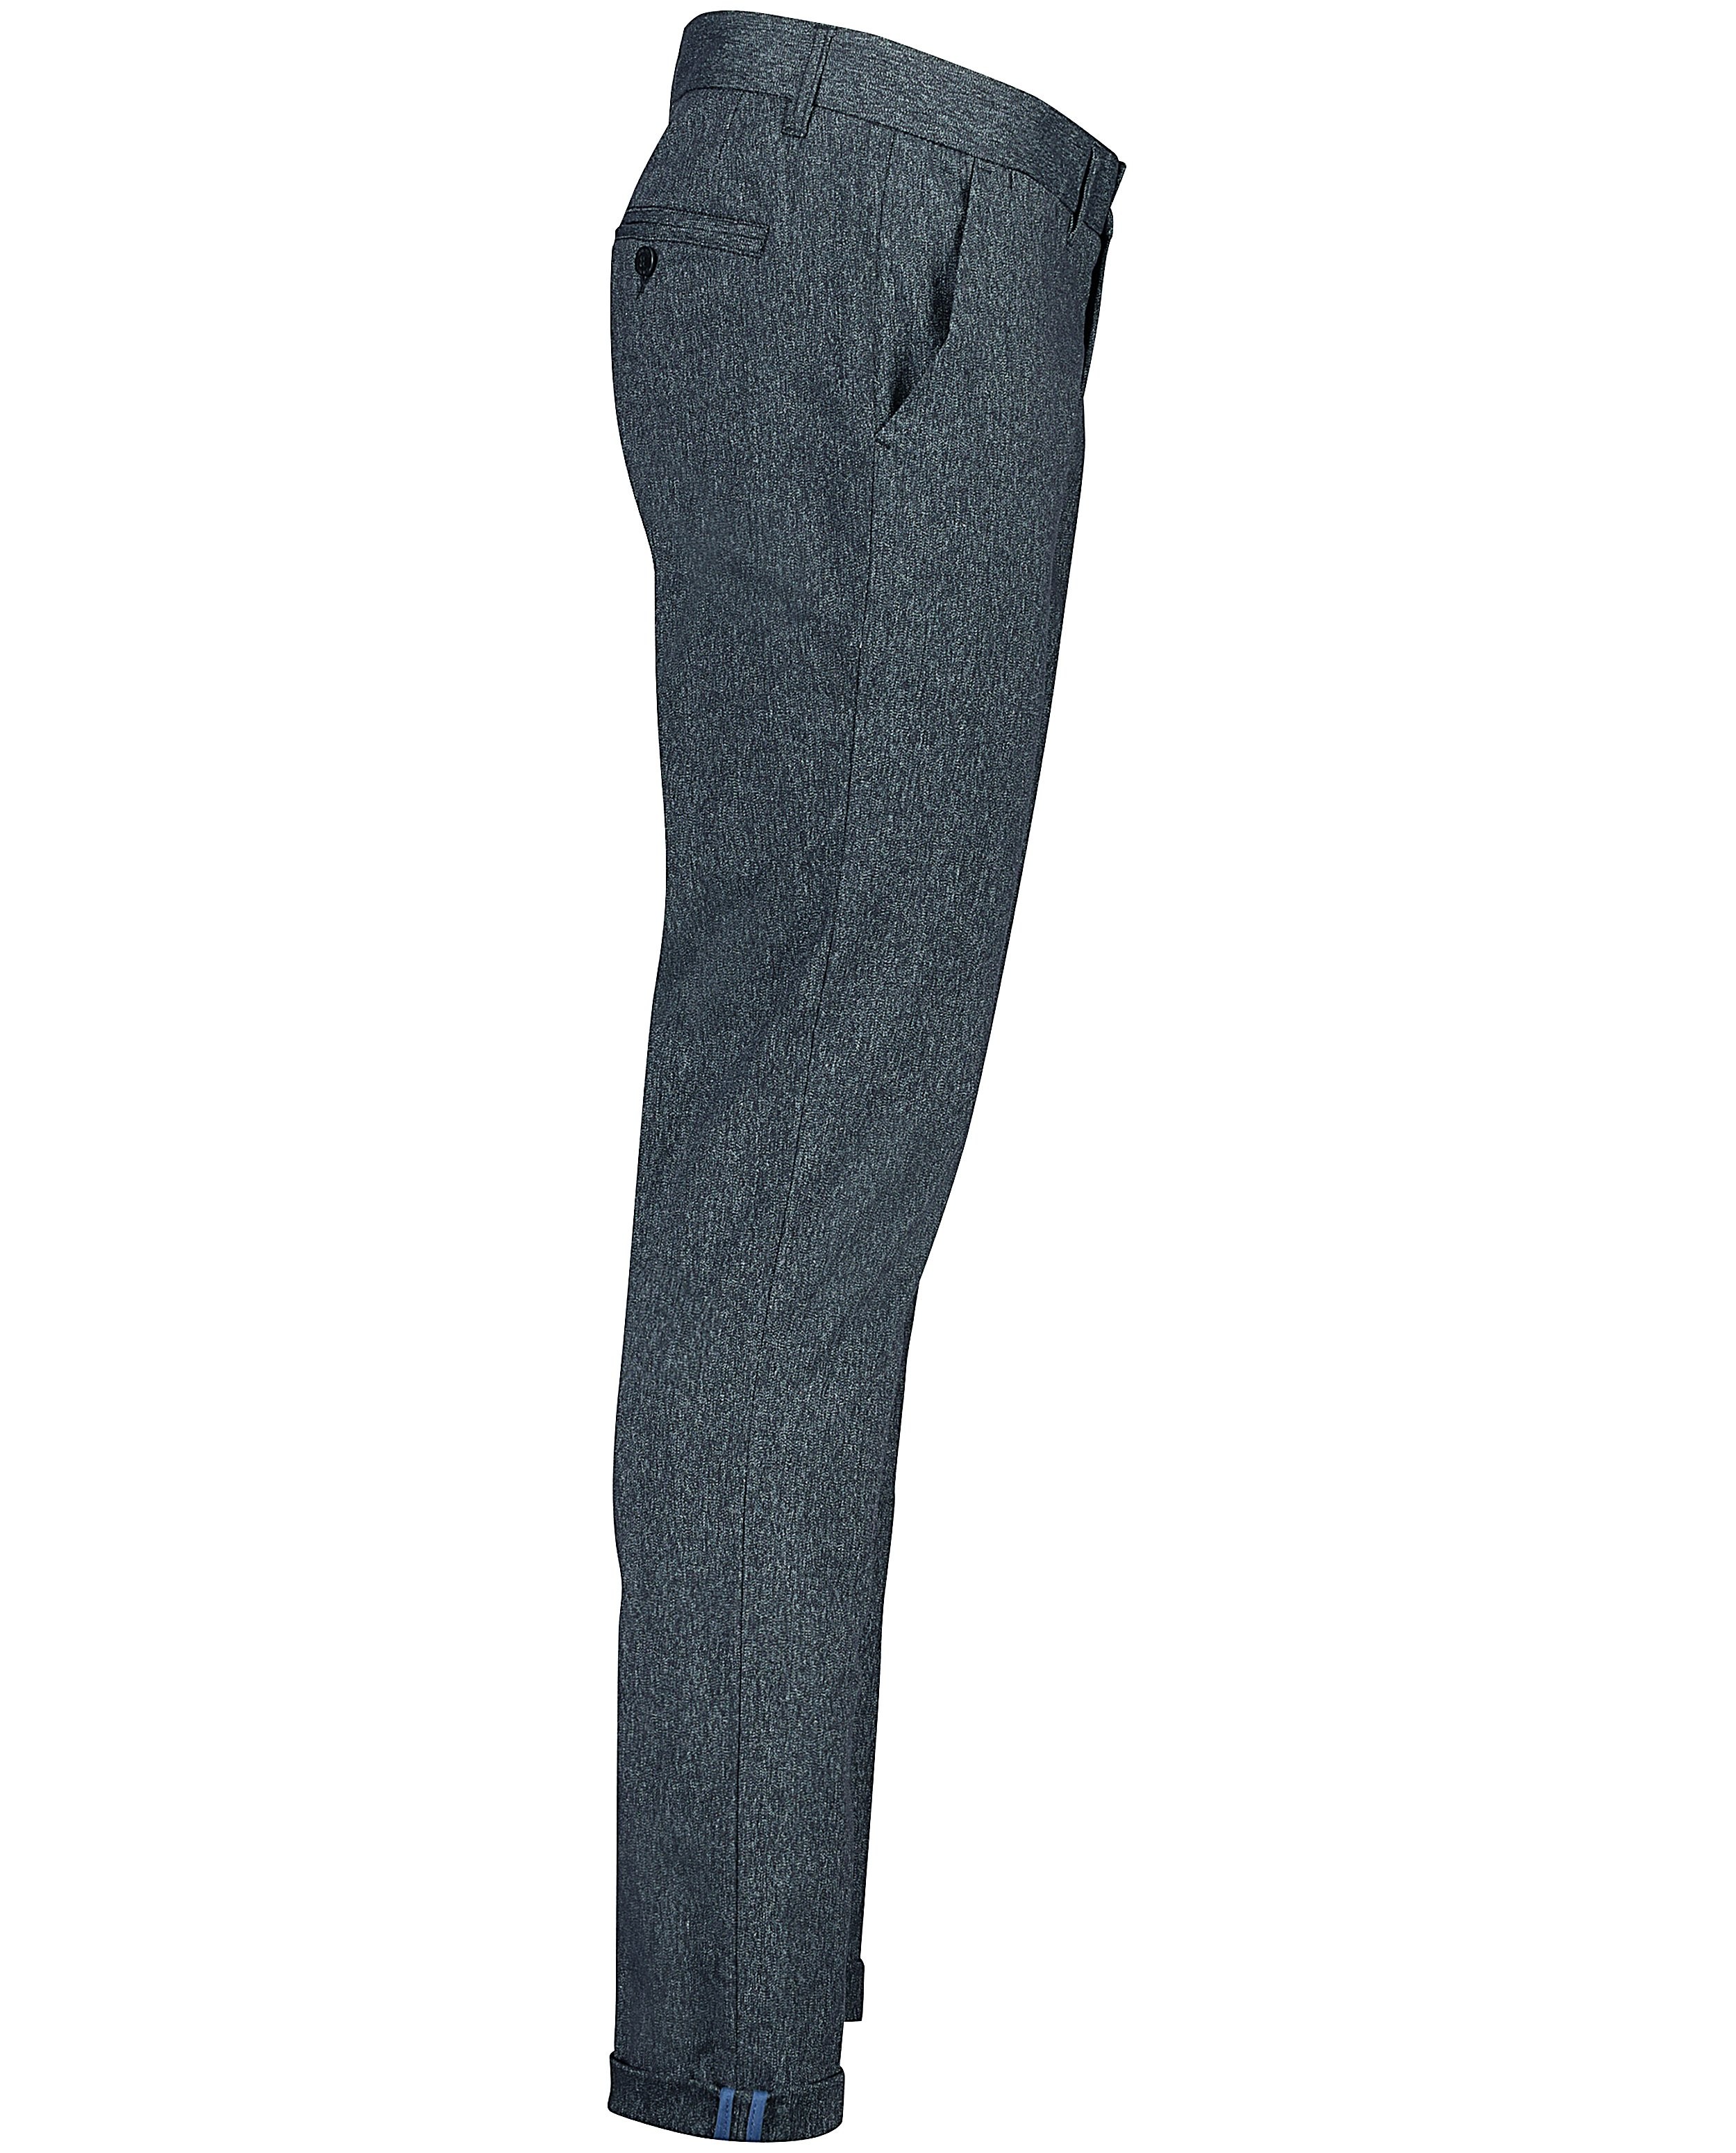 Pantalons - Chino gris foncé